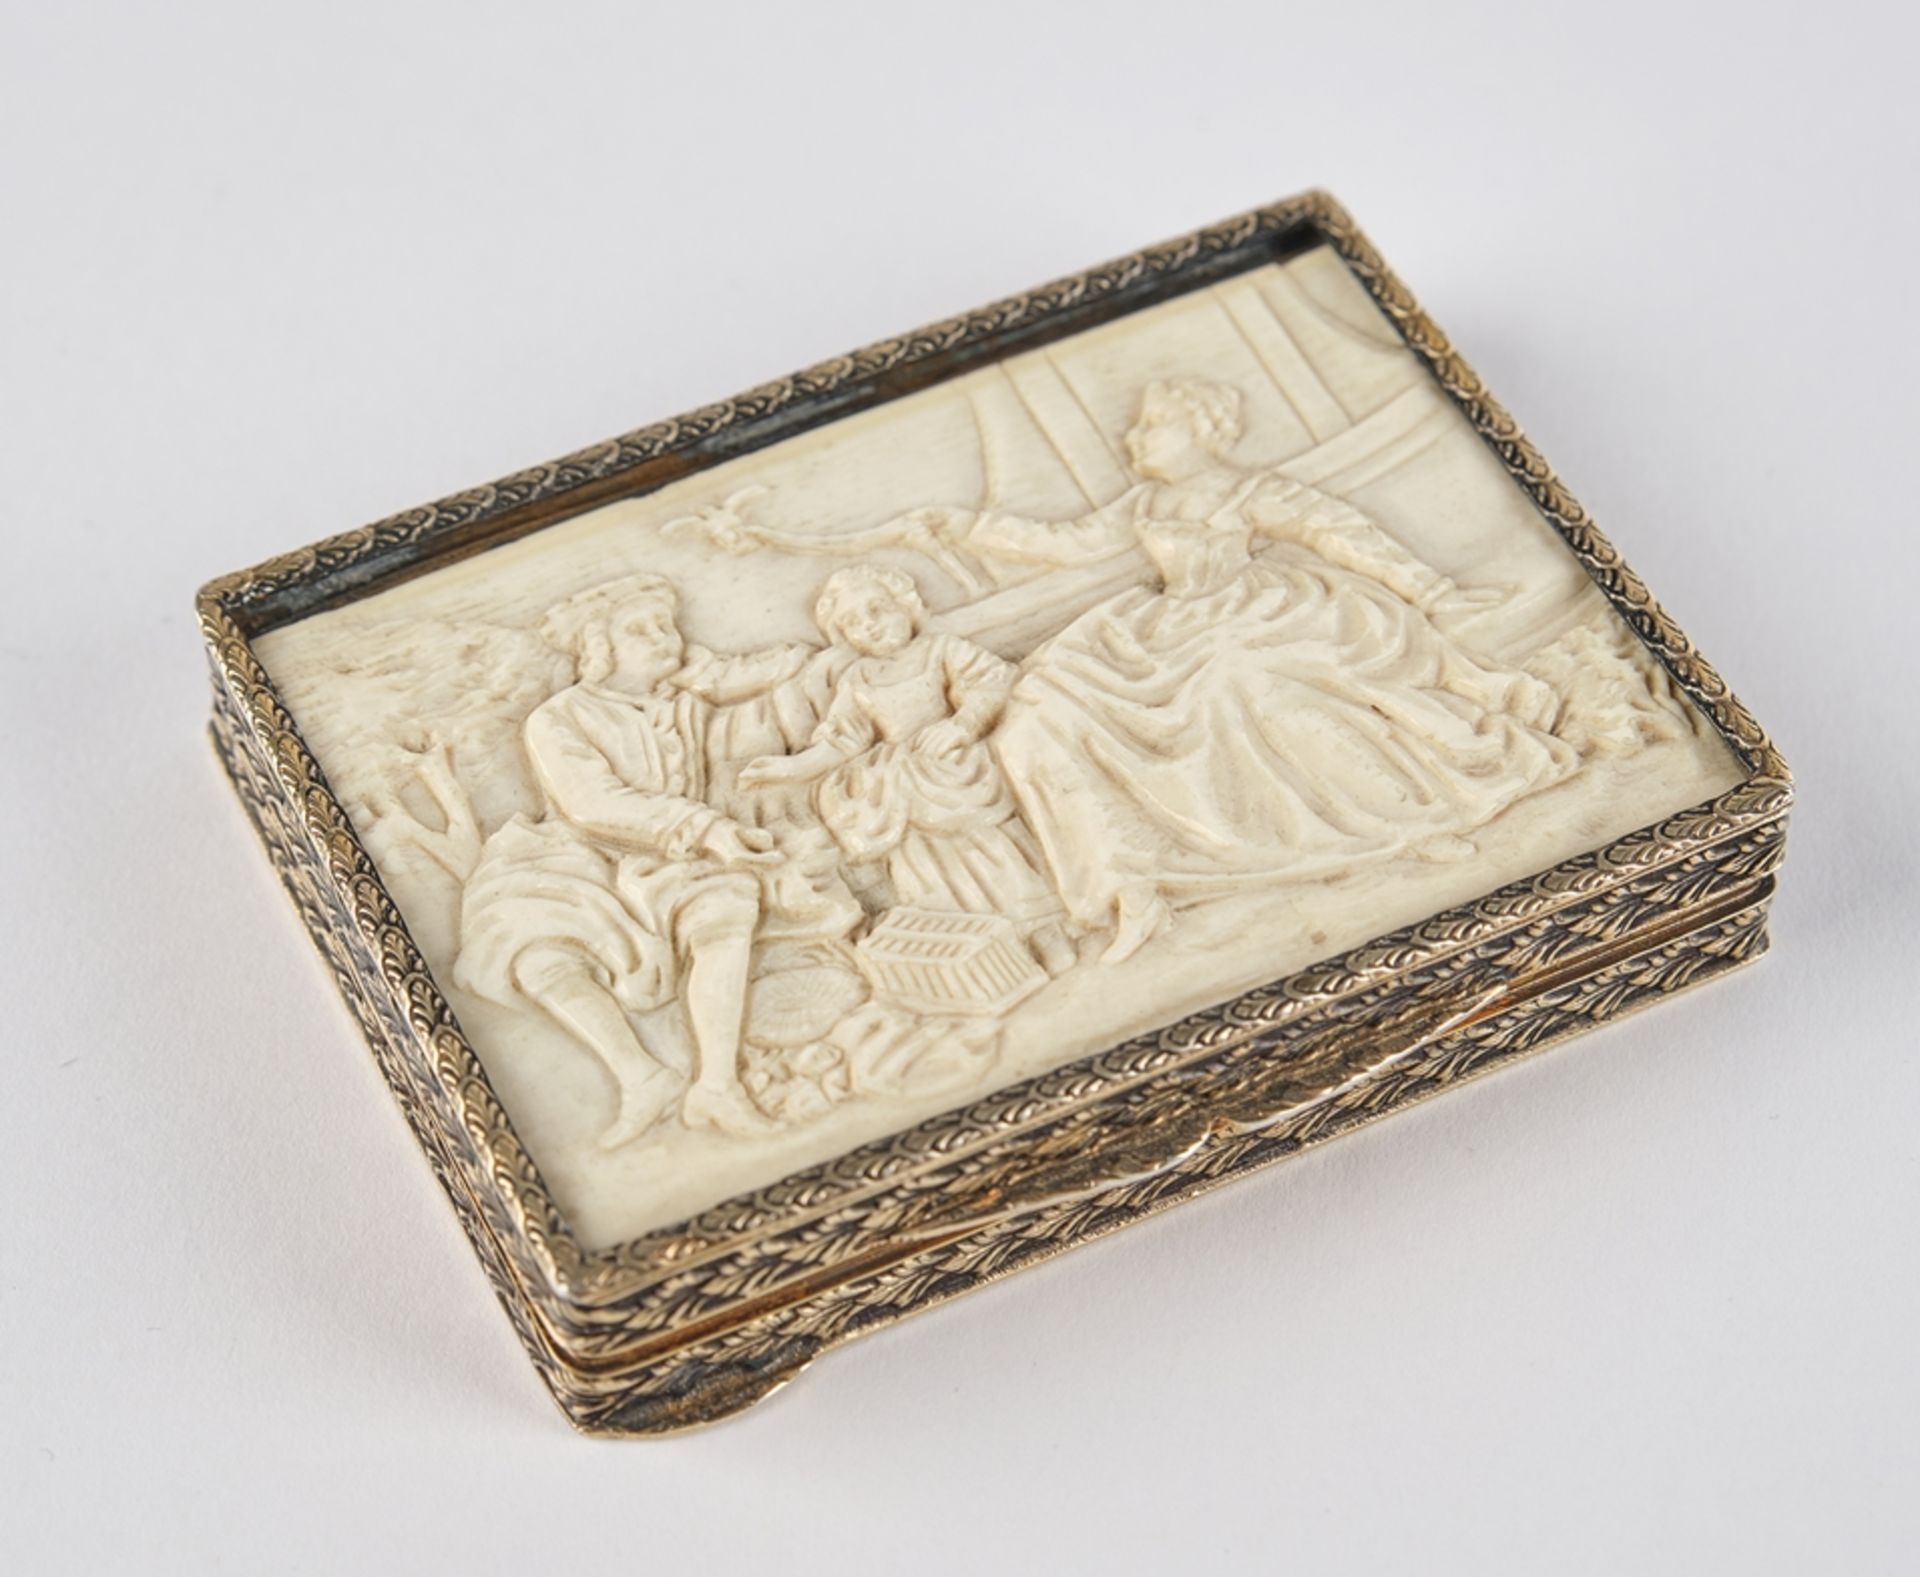 Silberetui mit Elfenbeindeckel, Elfenbein, geschnitzt, Kontinentaleuropa, um 1700-1800, Silberetui,